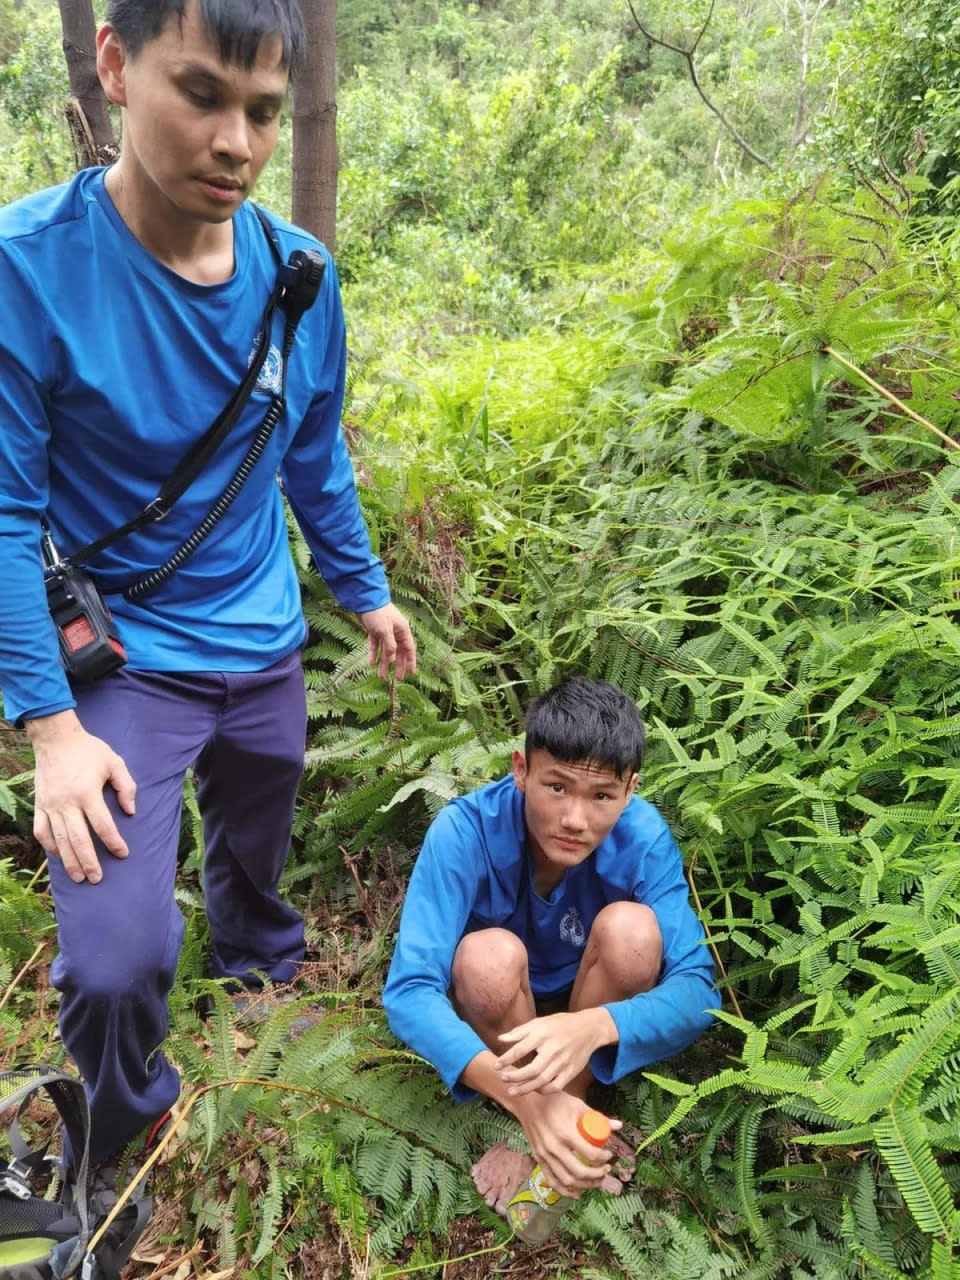 一度失蹤的 17 歲男拔生曾憲哲今日（11日）獲救，網上流傳相片，他獲救一刻時手持飲品，赤腳蹲坐草叢間，精神不俗。